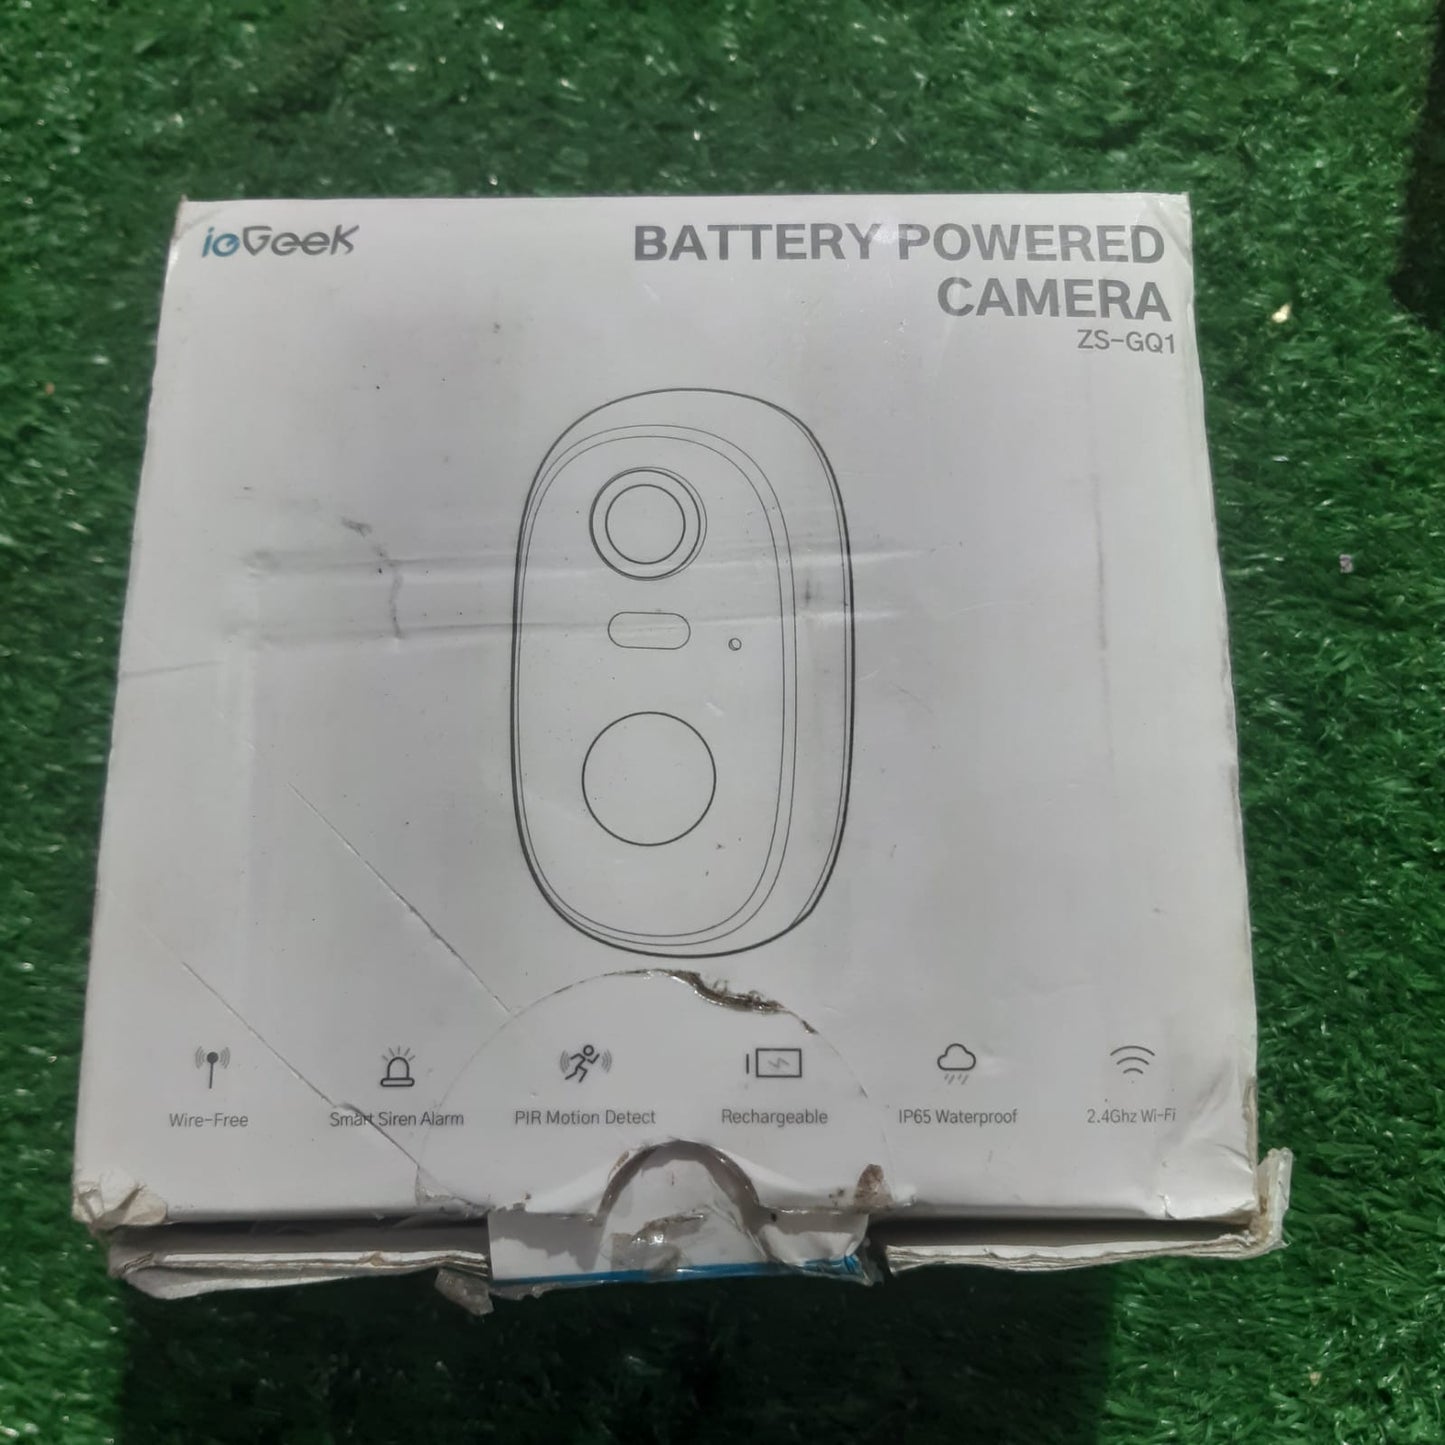 IGGeek Battery Camera | Model ZS-GQ1